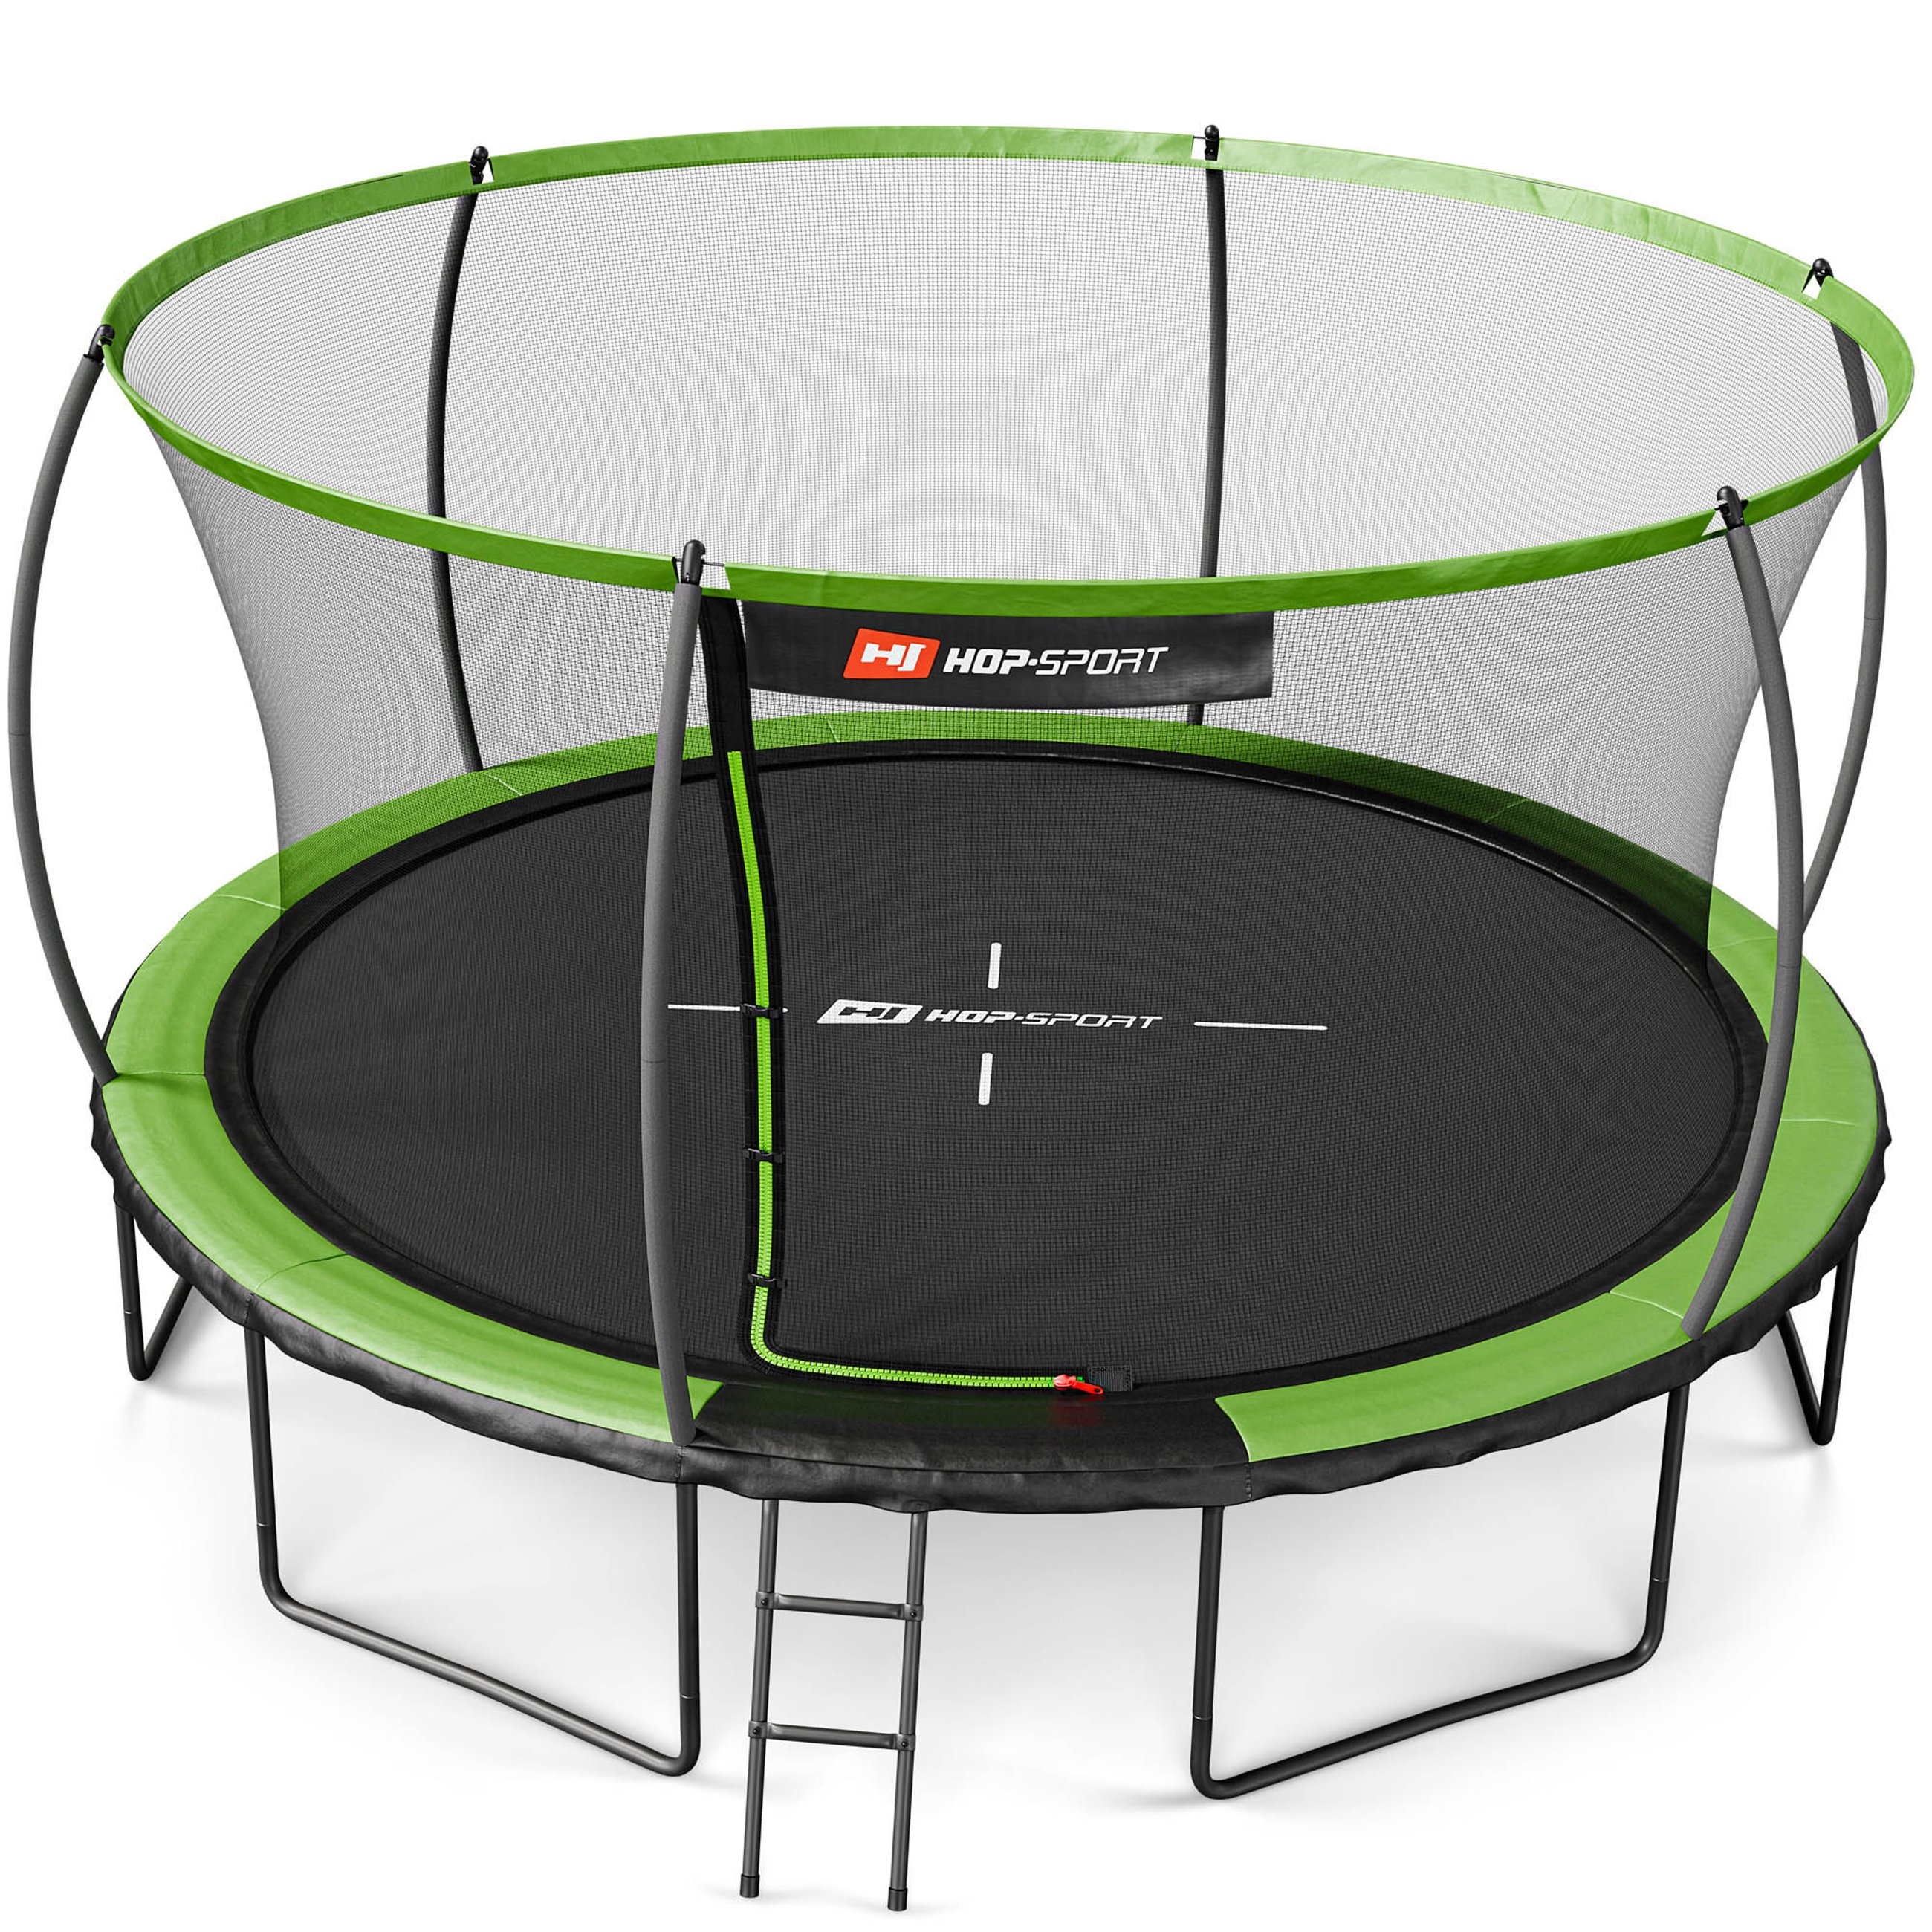 Trampolina Hop-Sport 14ft zielono-czarna, idealna do skakania na świeżym powietrzu, z certyfikatem bezpieczeństwa.